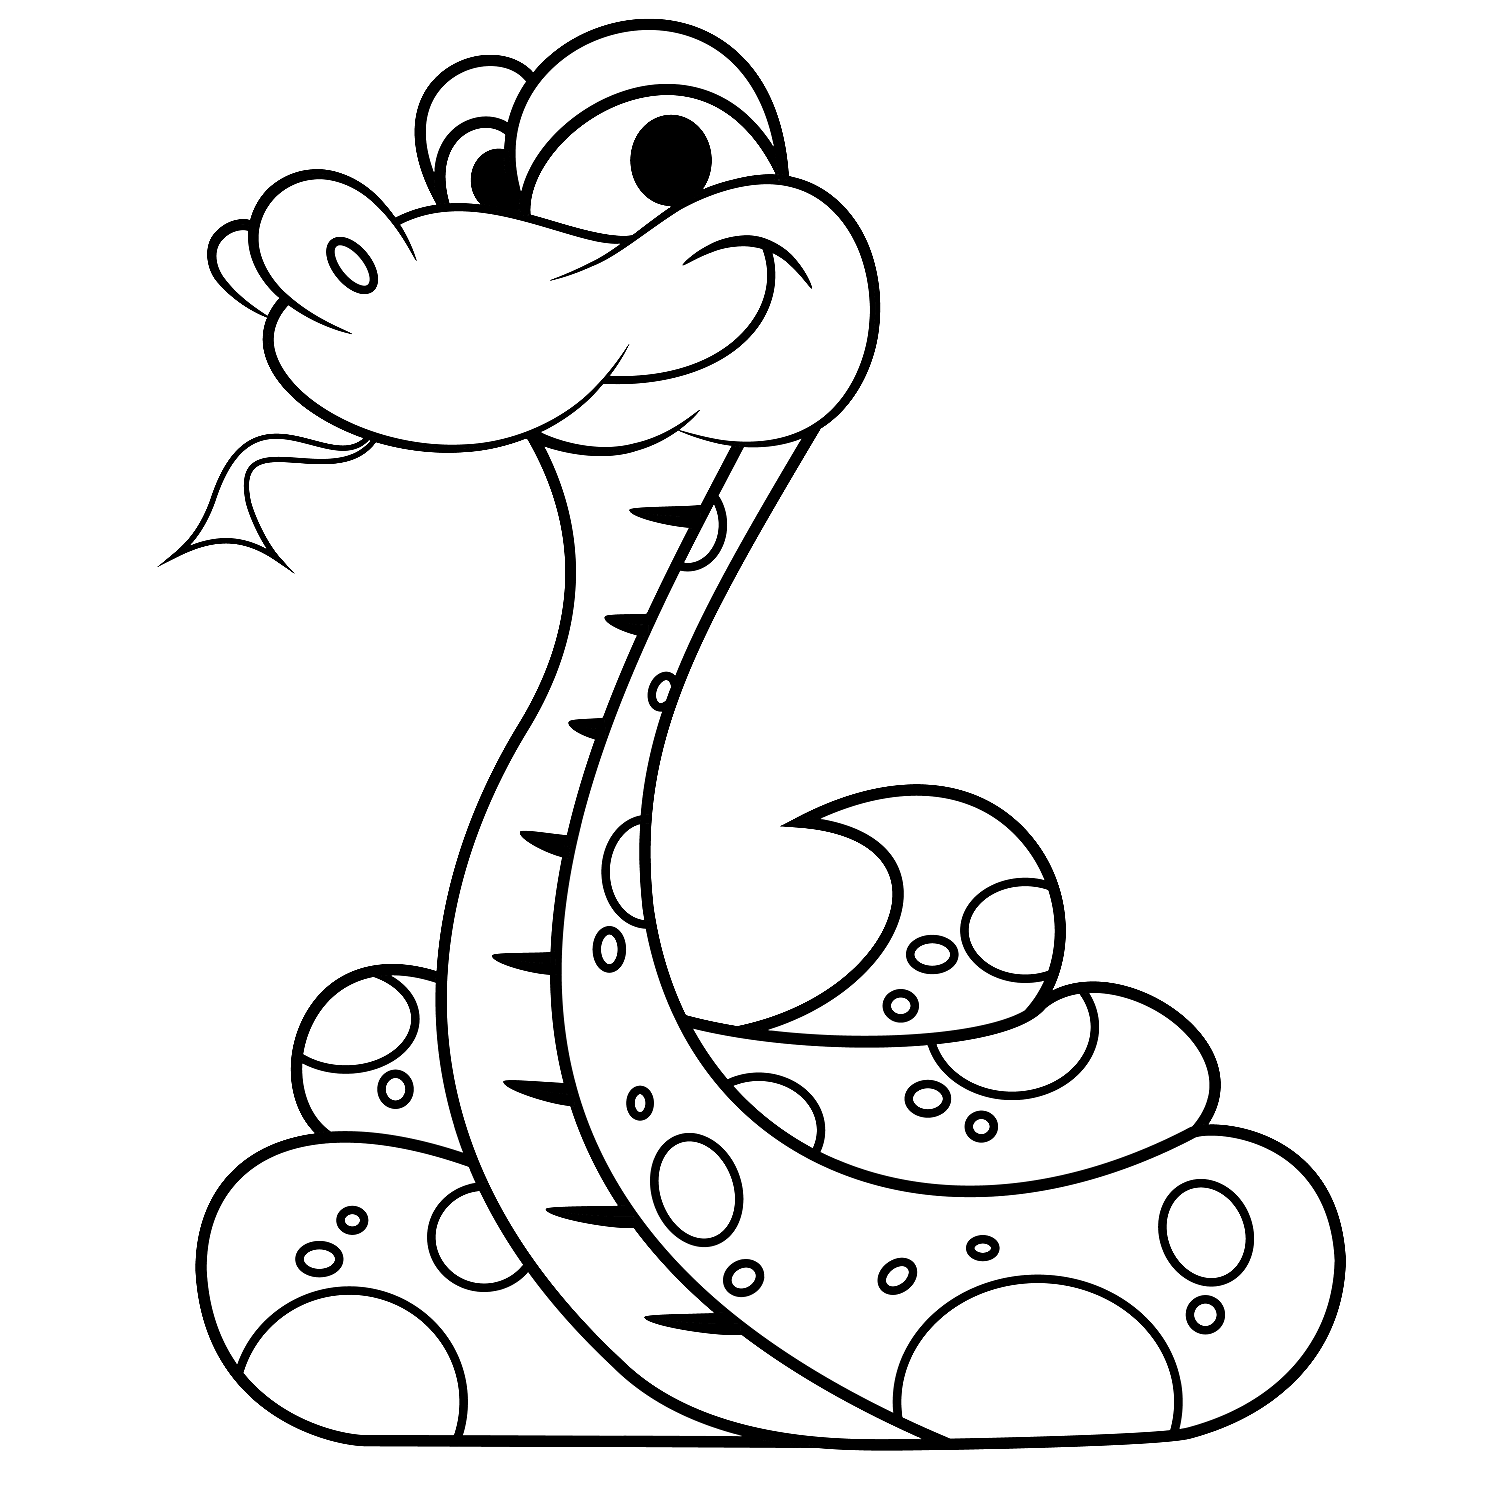 printable snake free printable snake coloring pages for kids snake printable 